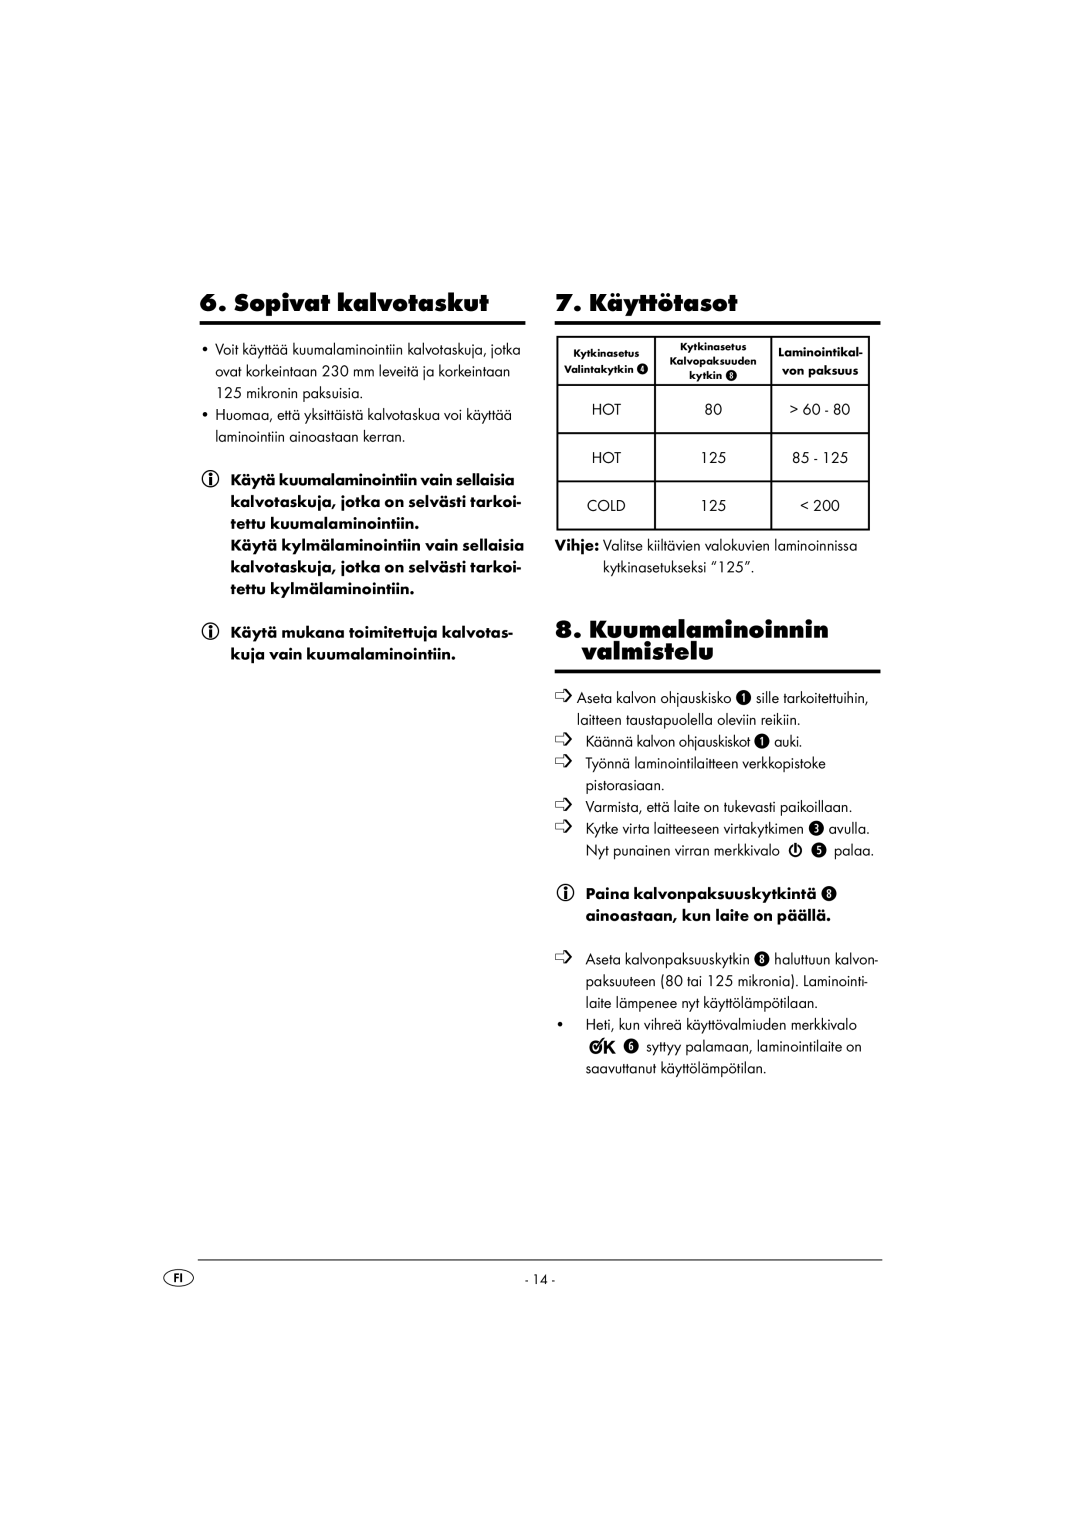 Kompernass KH 4412 manual Sopivat kalvotaskut, 7. Käyttötasot, Kuumalaminoinnin valmistelu 